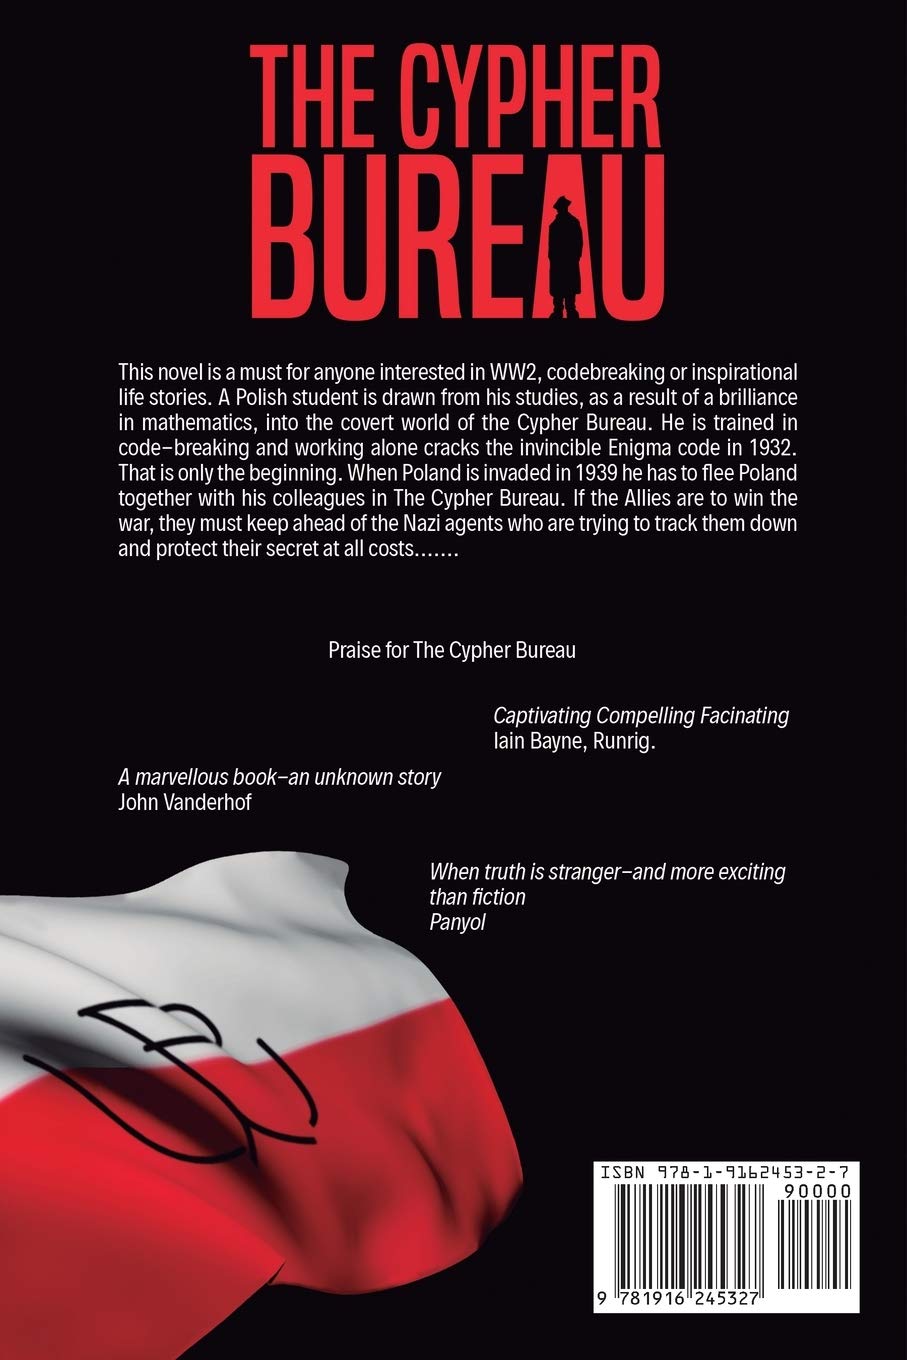 Czwarta strona okładki książki "The Cipher Bureau" z flagą biało-czerwoną ze znakiem Polski Walczącej.